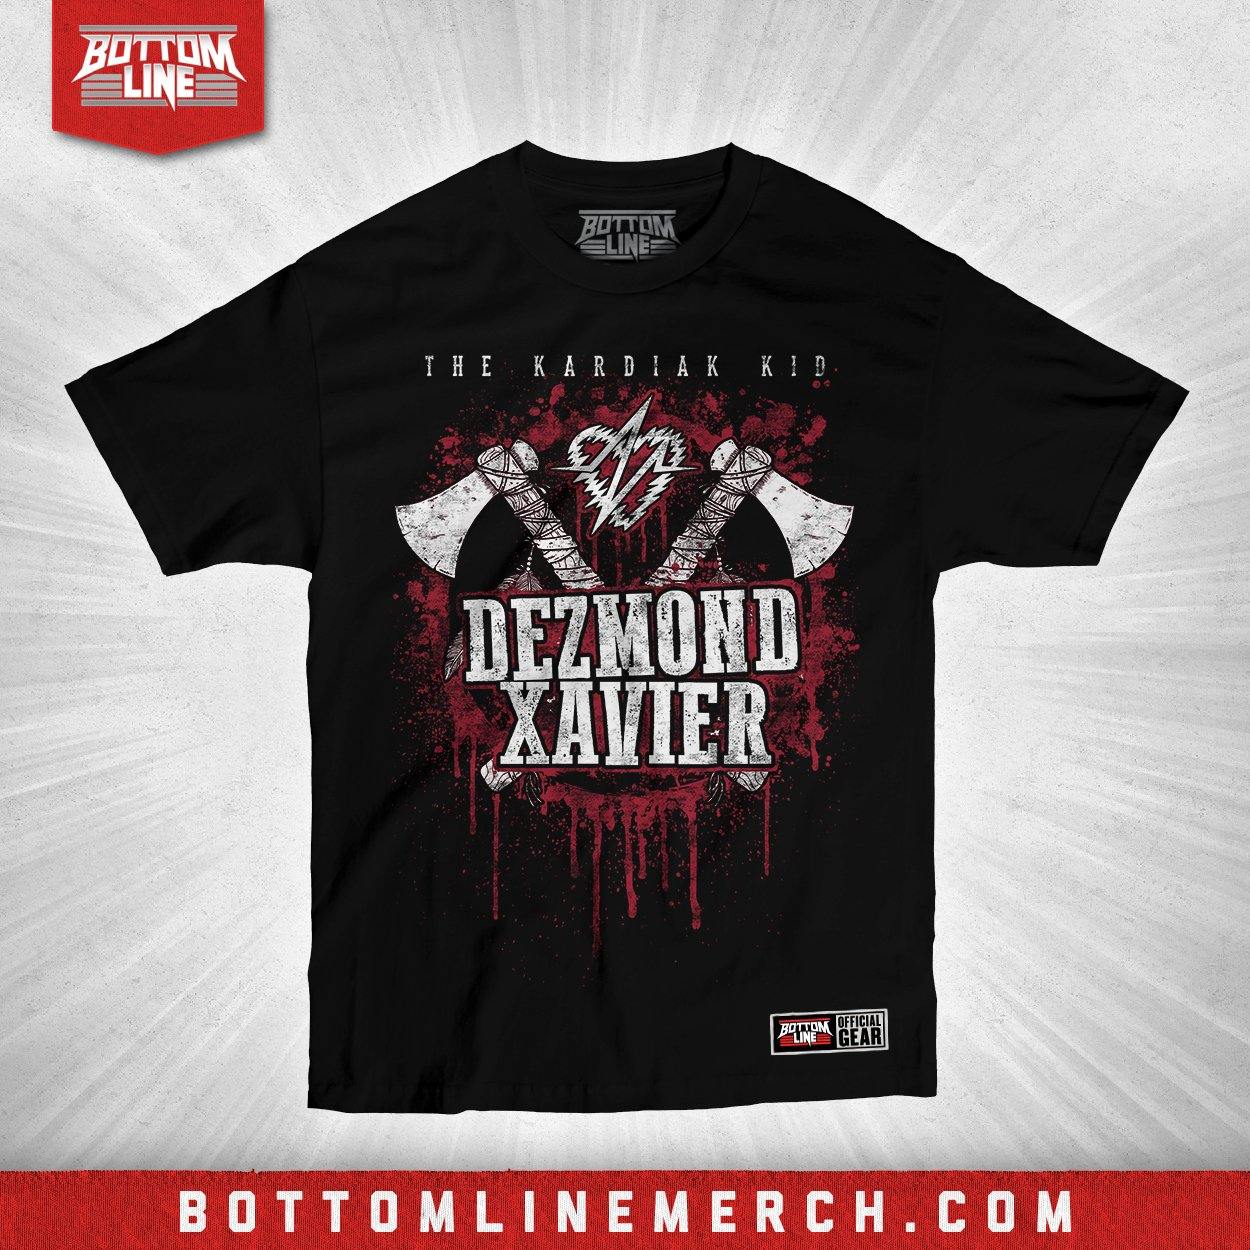 Buy Now – Dezmond Xavier "Hatchet" Shirt – Wrestler & Wrestling Merch – Bottom Line